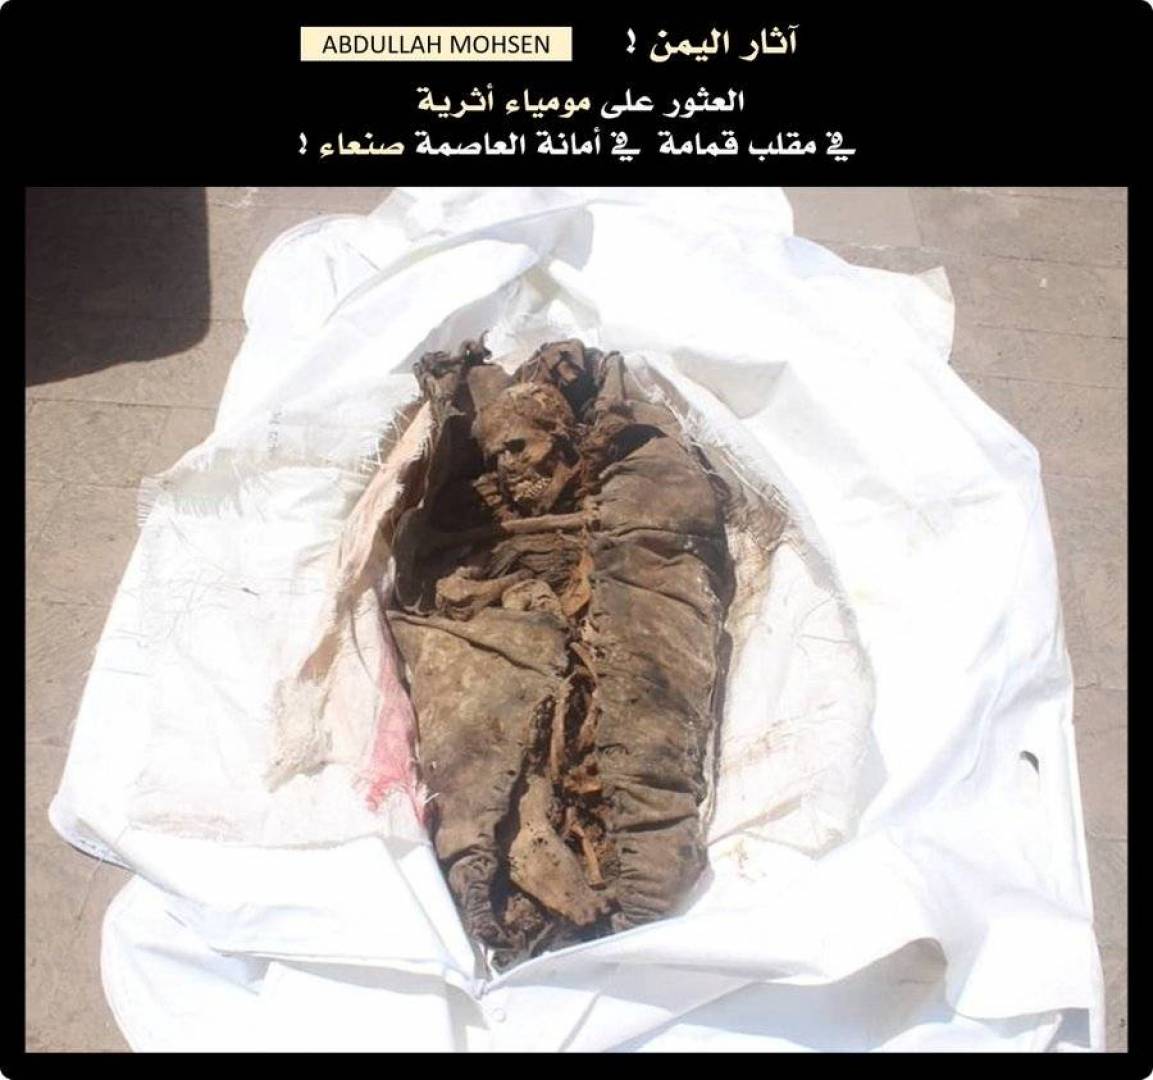 العثور على مومياء محنطة في مكب للقمامة باليمن